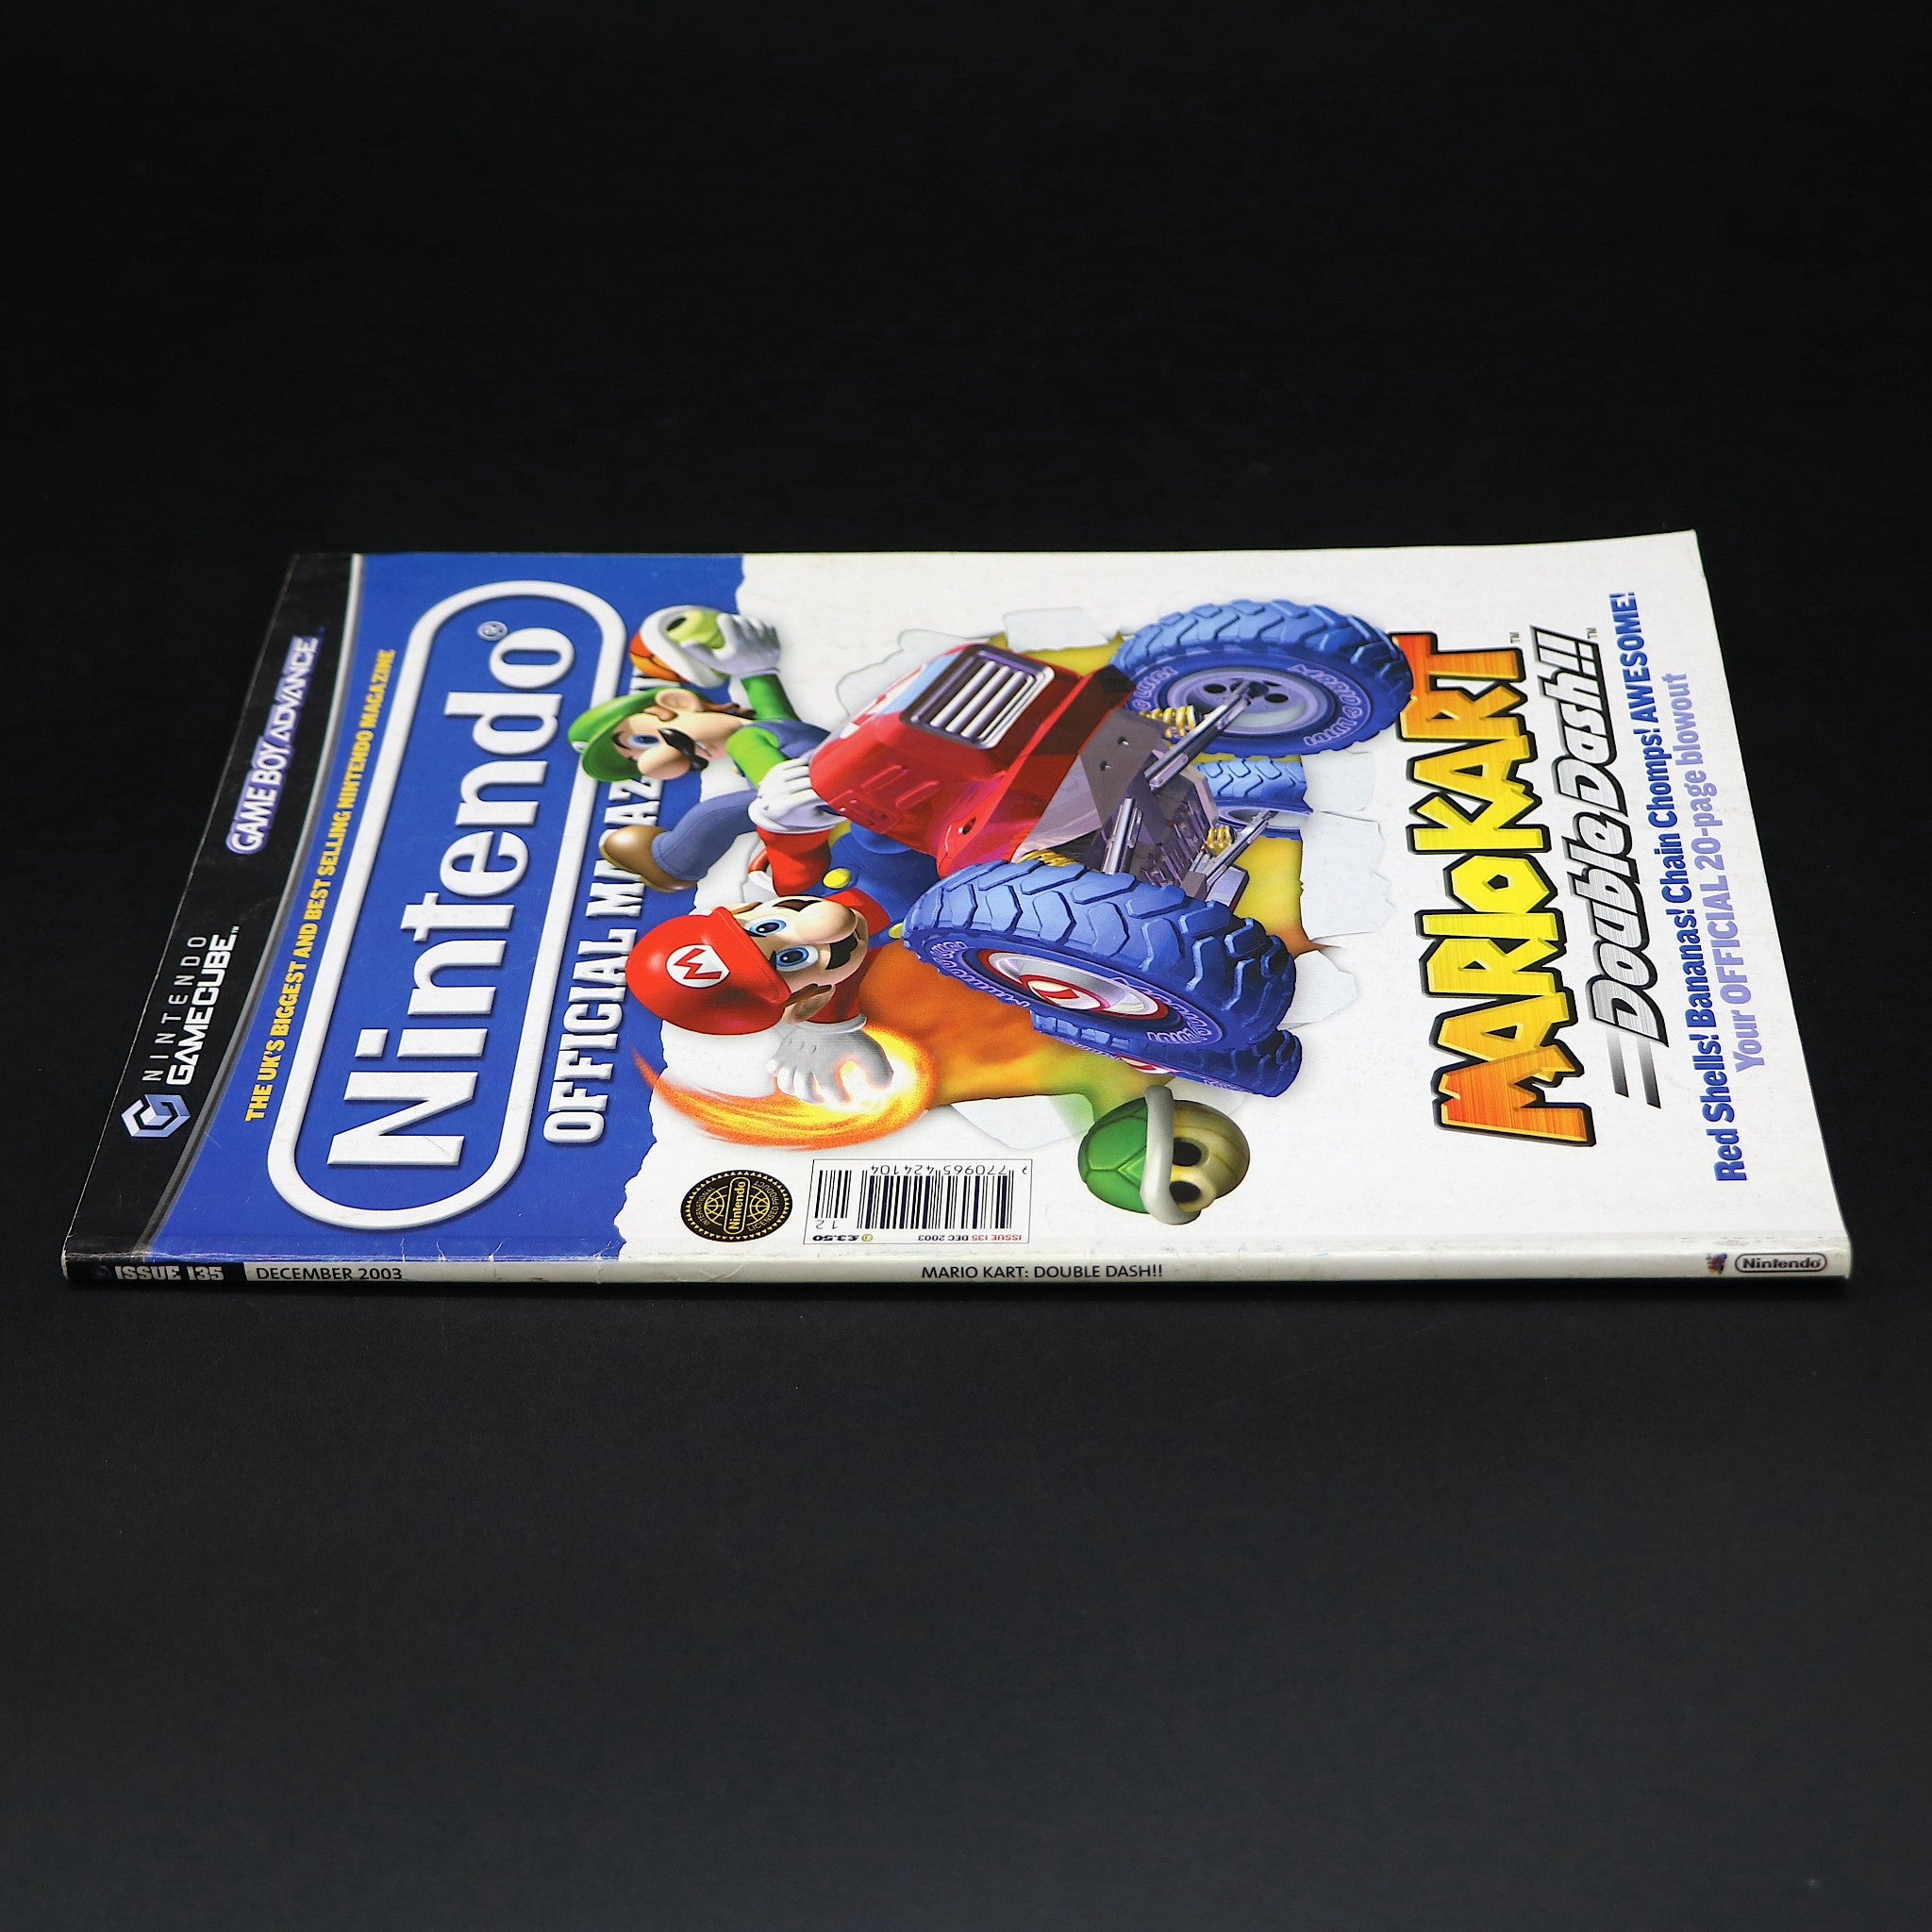 Official Nintendo Magazine NOM UK | Issue 135 Dec 2003 | Mario Kart Double Dash